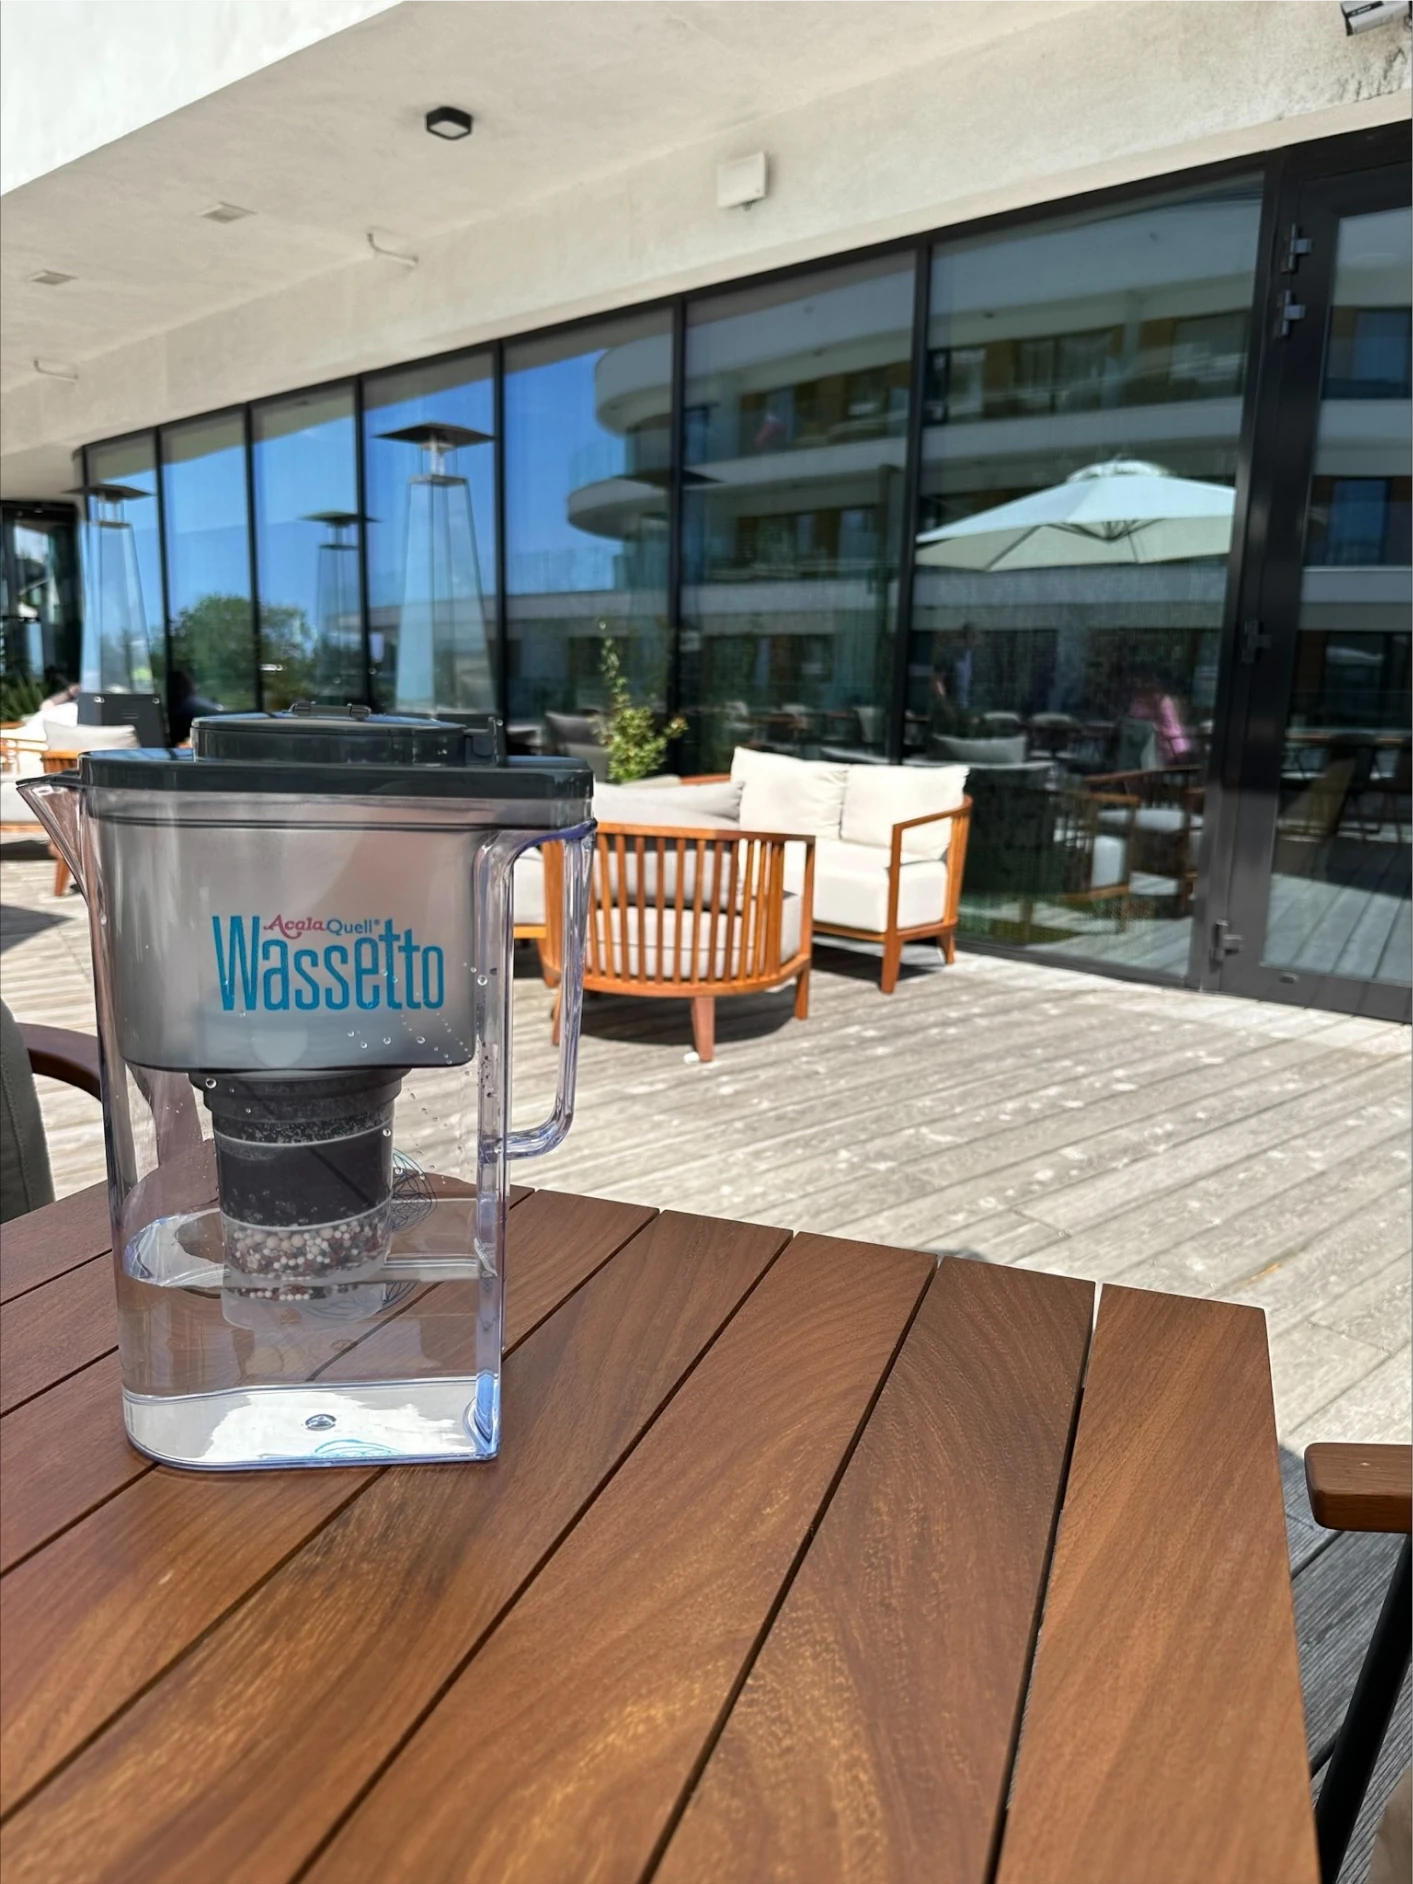 Kannenwasserfilter Wassetto vor Hotel auf Holztisch